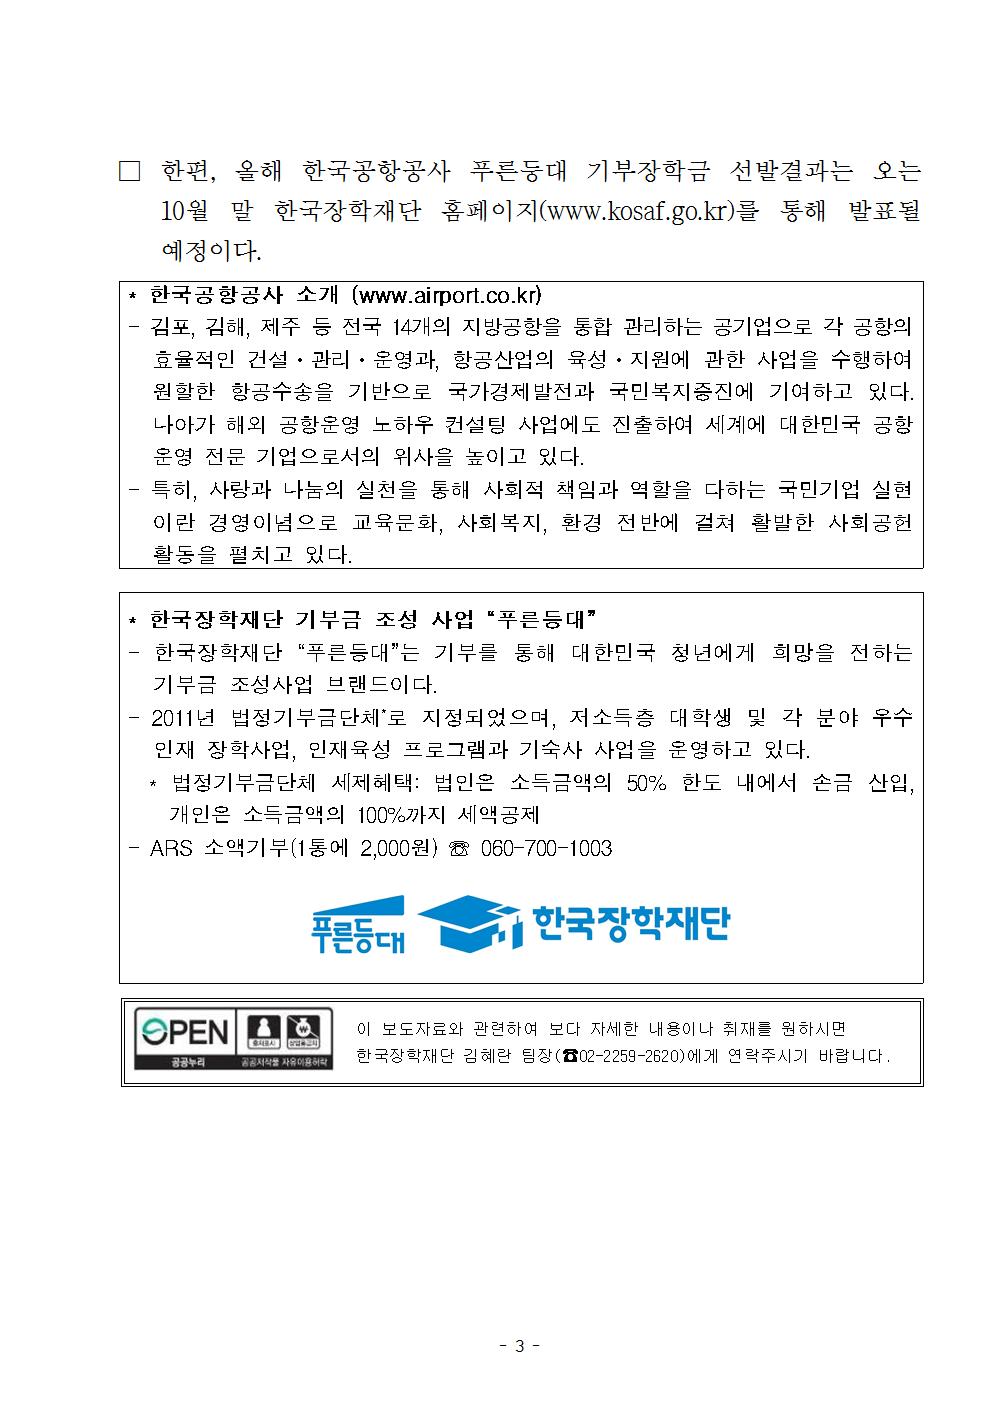 09-10(월)[보도자료] (한국장학재단-한국공항공사) 푸른등대 기부장학금 기탁식 개최003.jpg